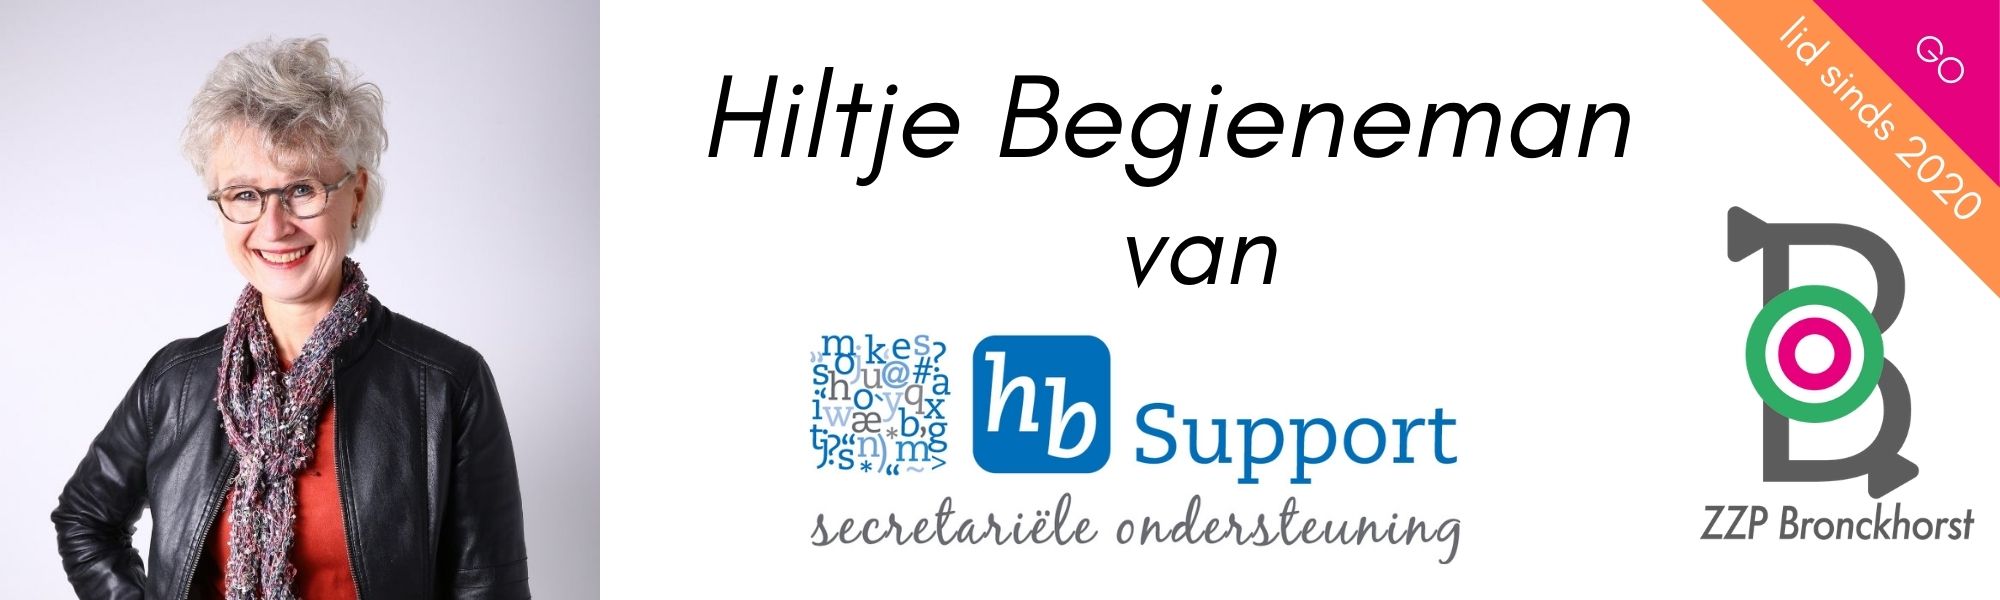 hb-support-secretariële-ondersteuning-achterhoek-zzp-bronckhorst